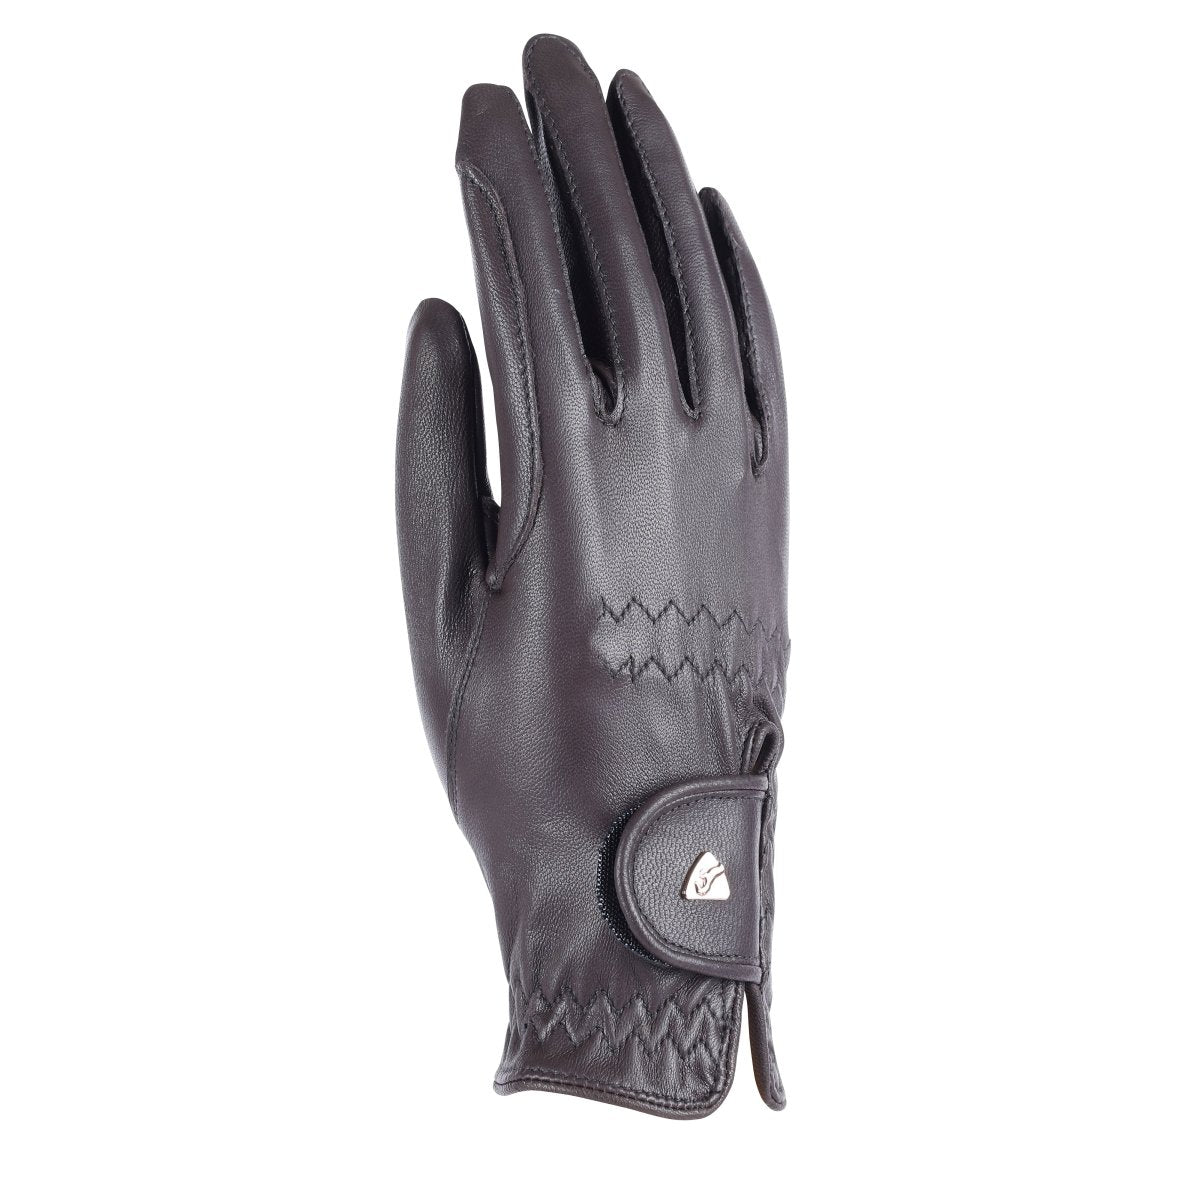 Aubrion Leather Riding Gloves - Black - L